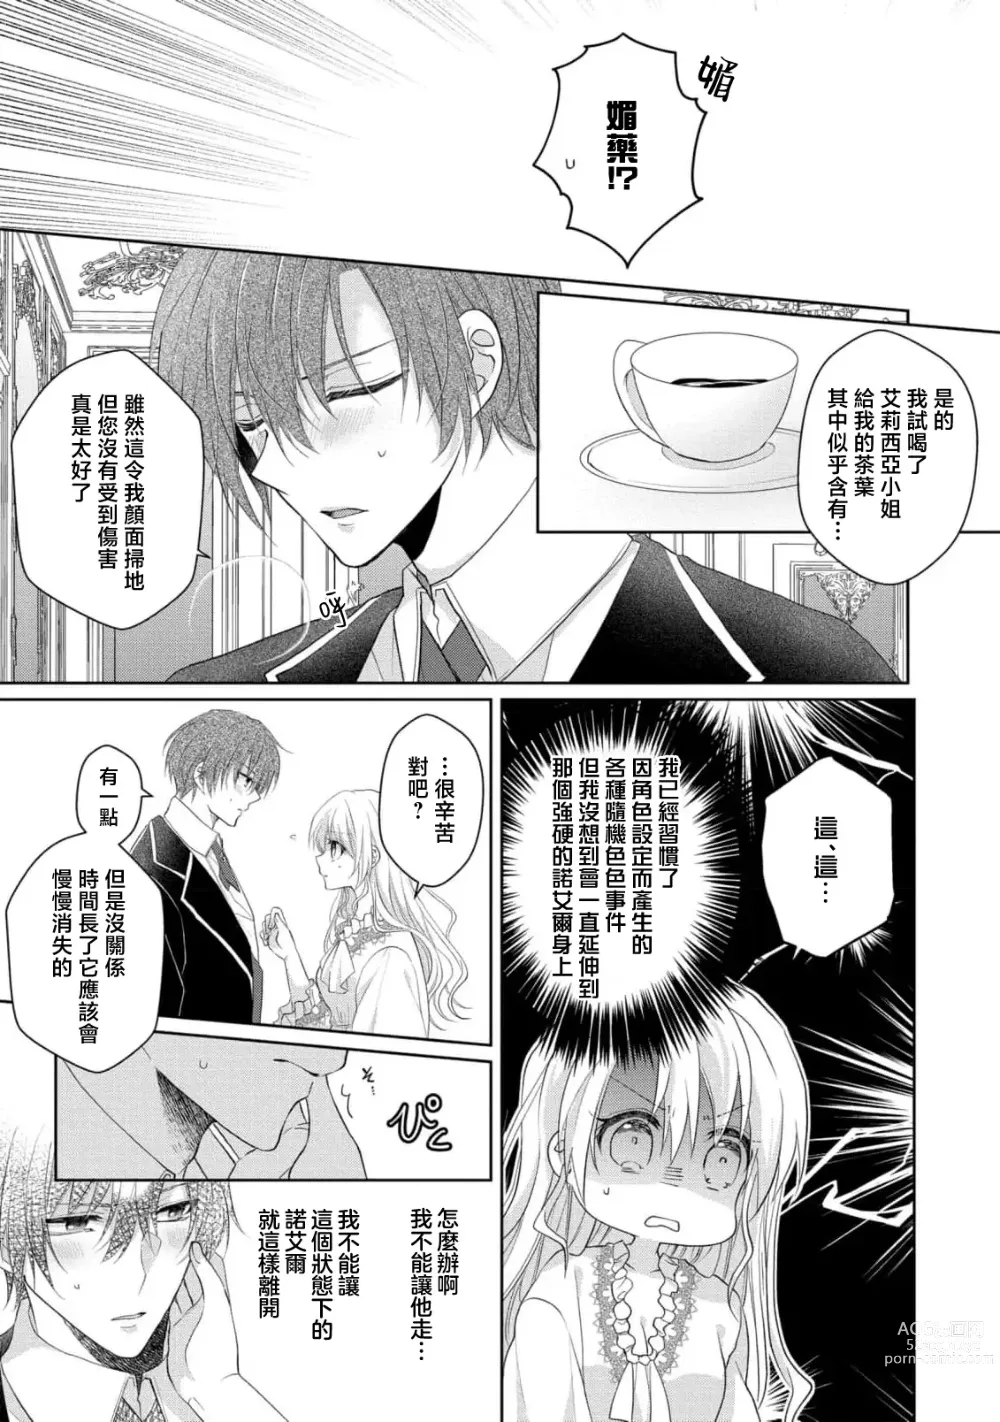 Page 6 of manga 转生成放荡大小姐之后与强硬派随从有了R18展开（tensei nochi、koyoi mo kare ha watashi wo omoku atsuku motometekimasu）